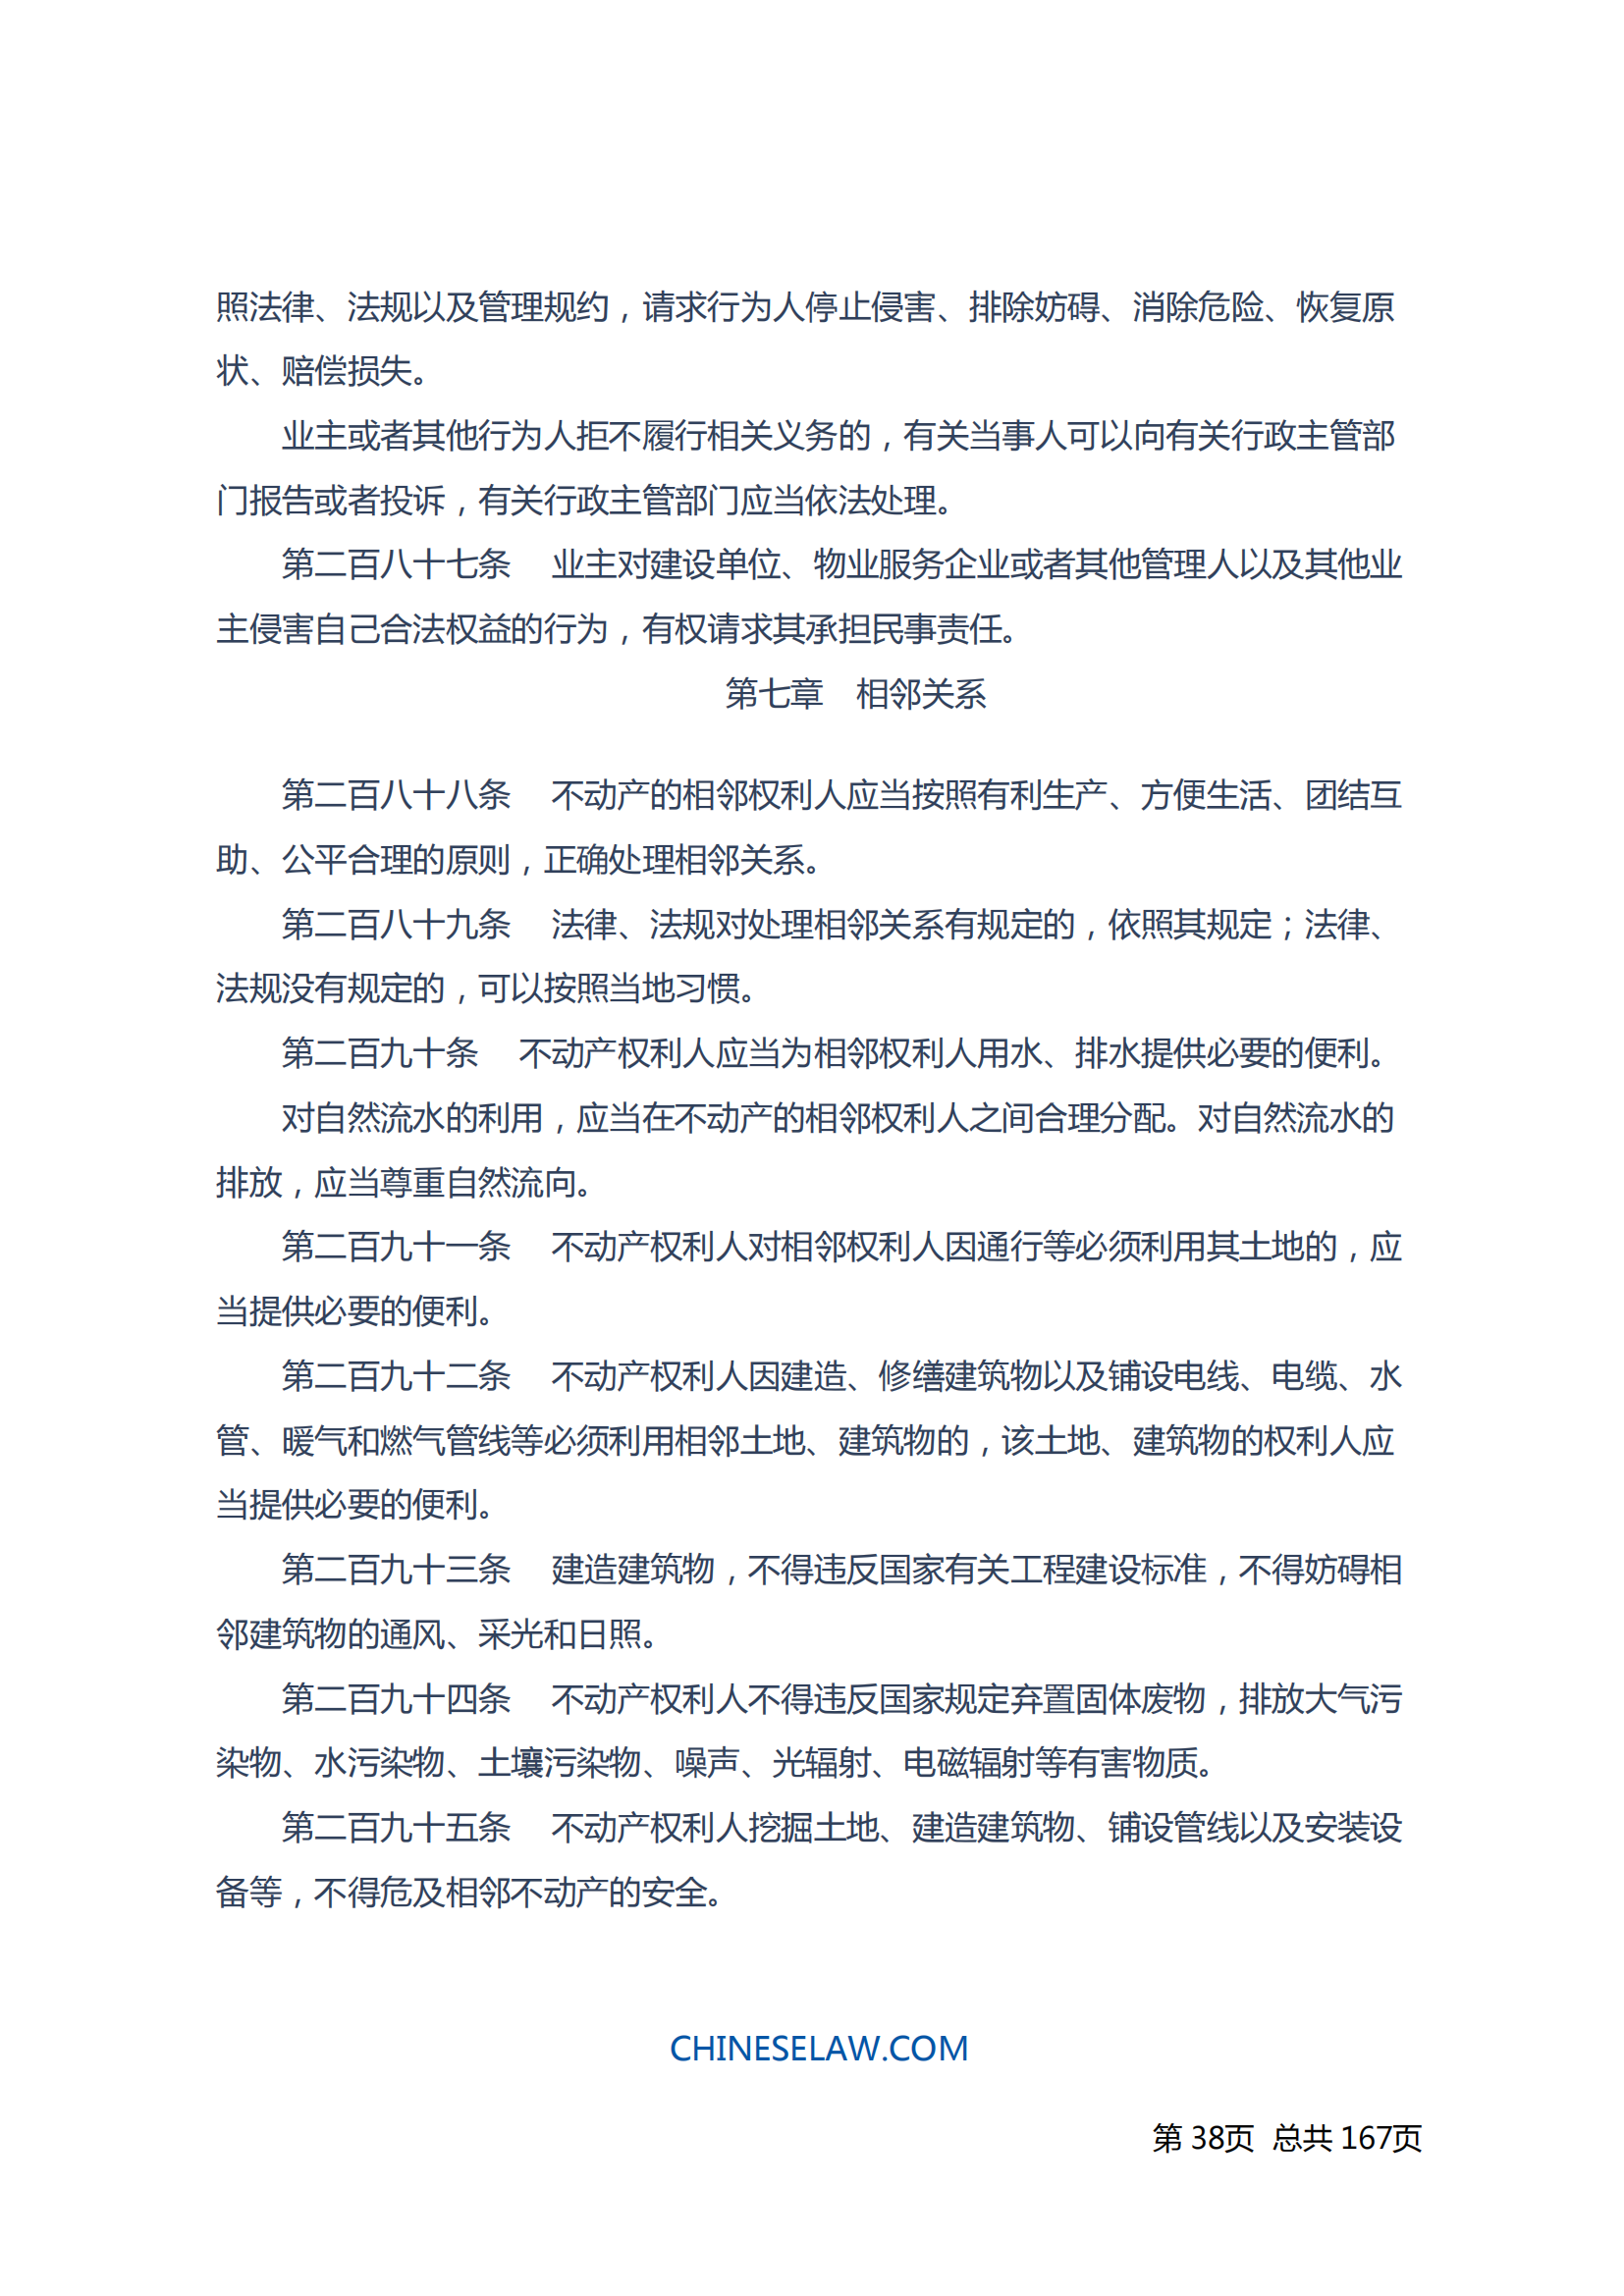 中华人民共和国民法典_37